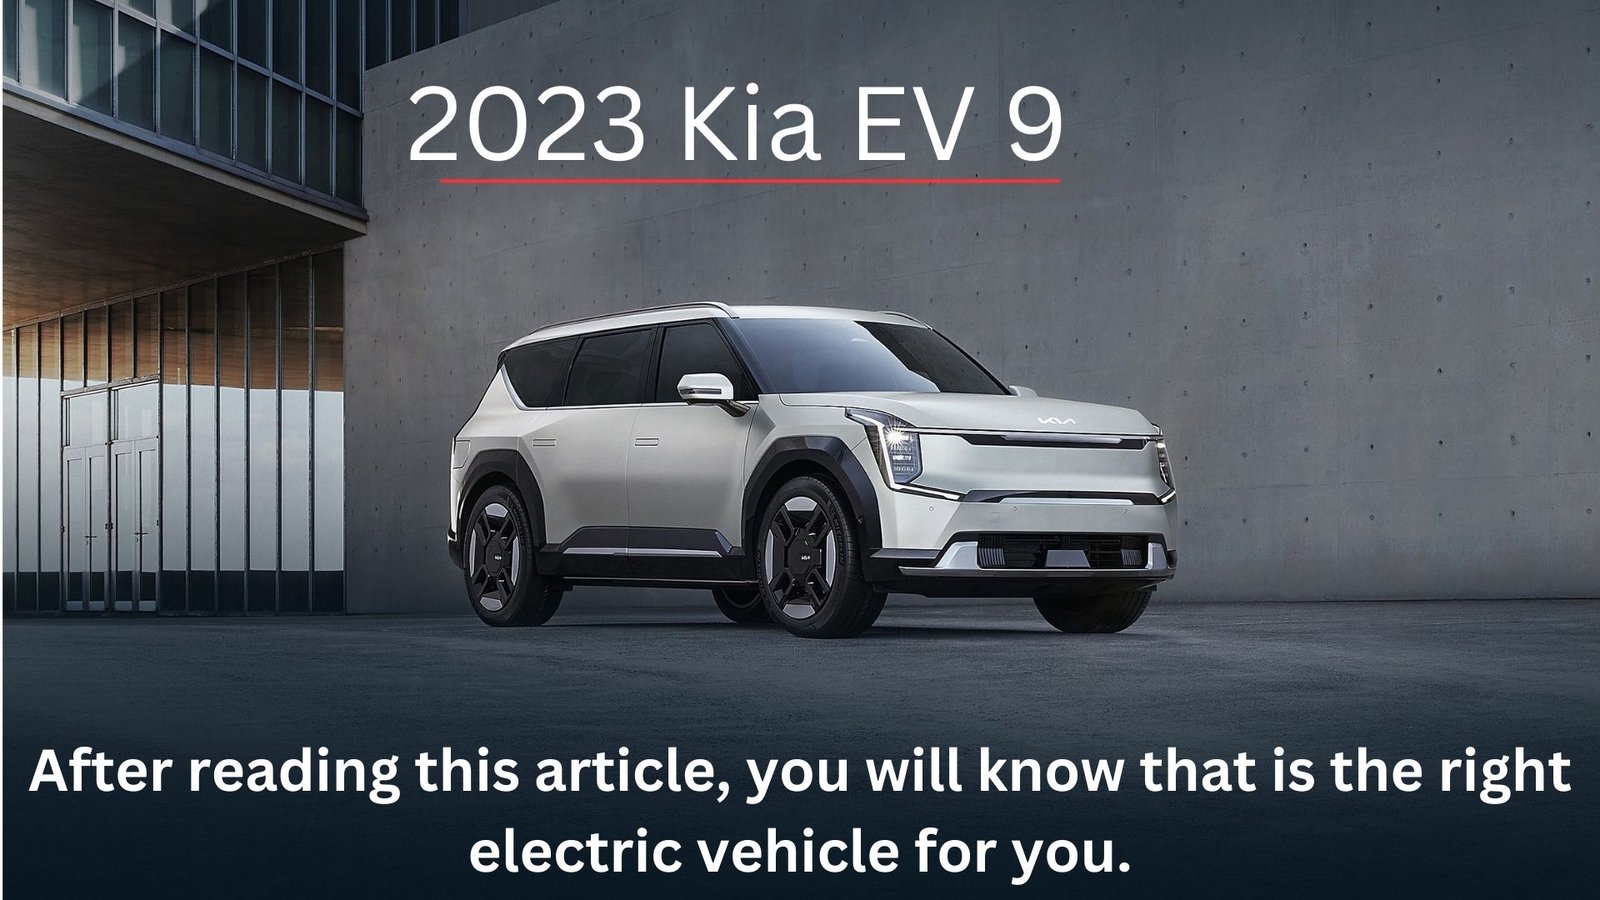 2023 Kia EV 9